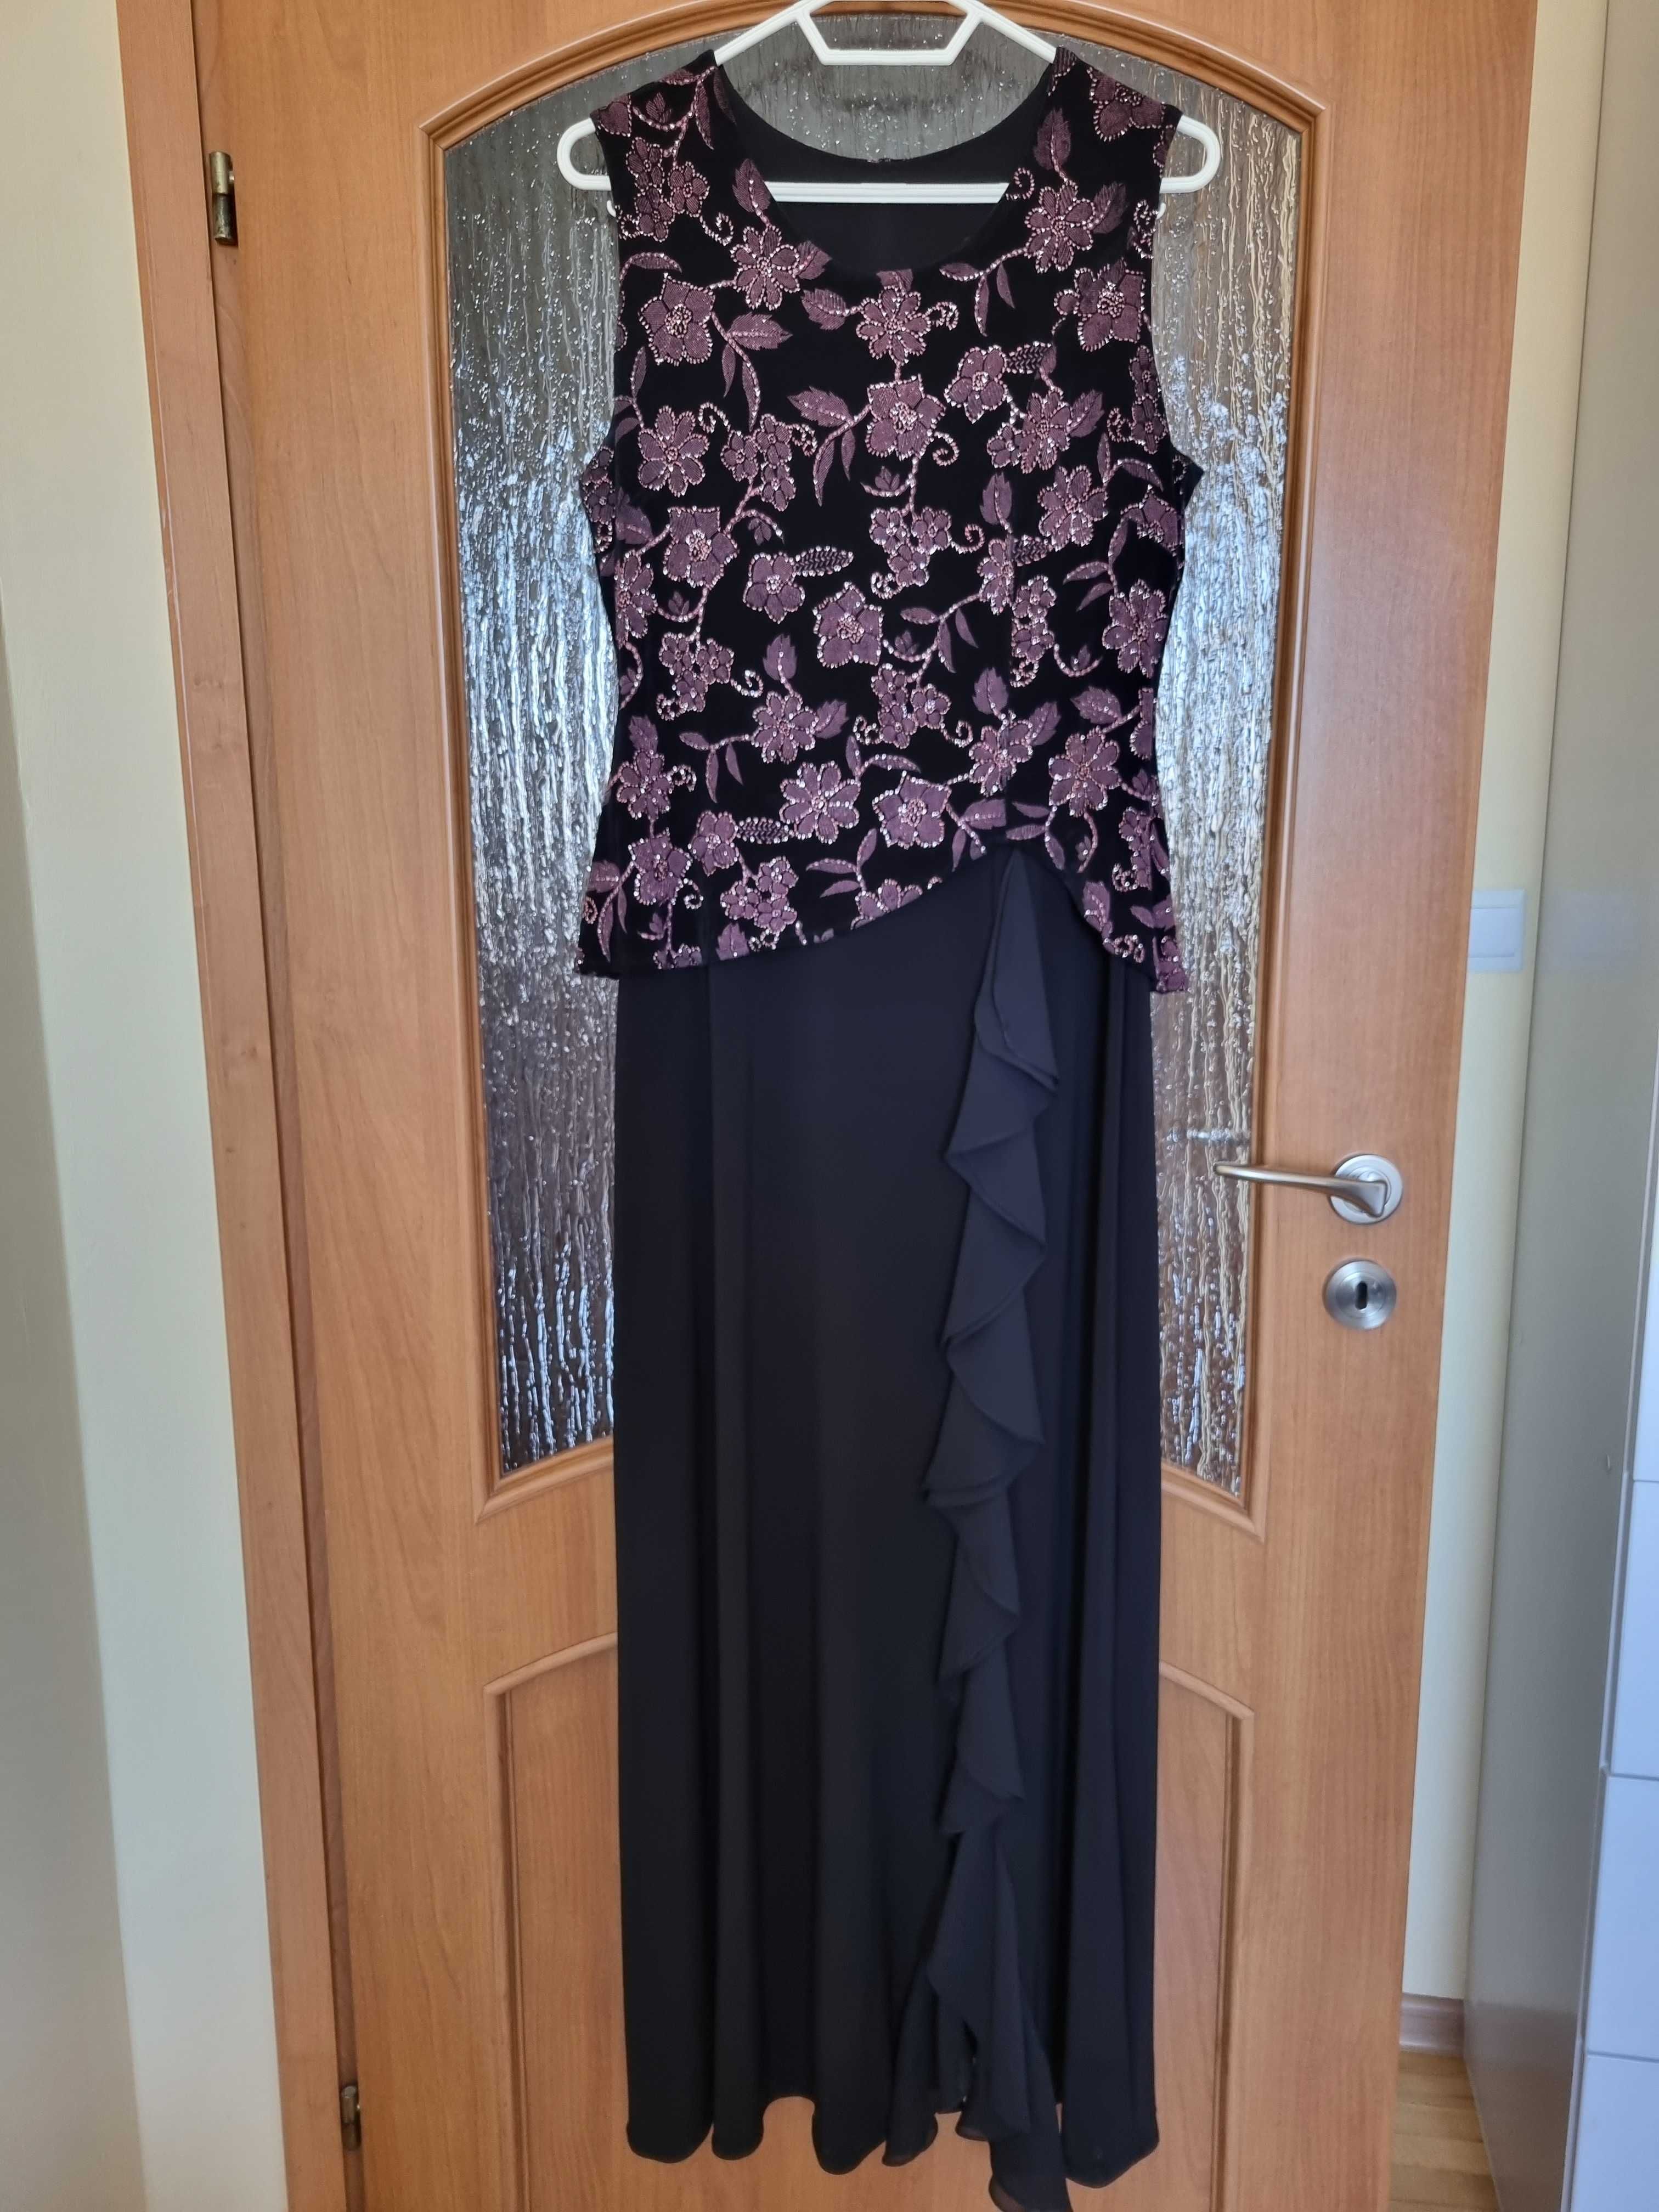 piękna wieczorowa czarna maxi suknia Laviana z biżu rozm. 42-46